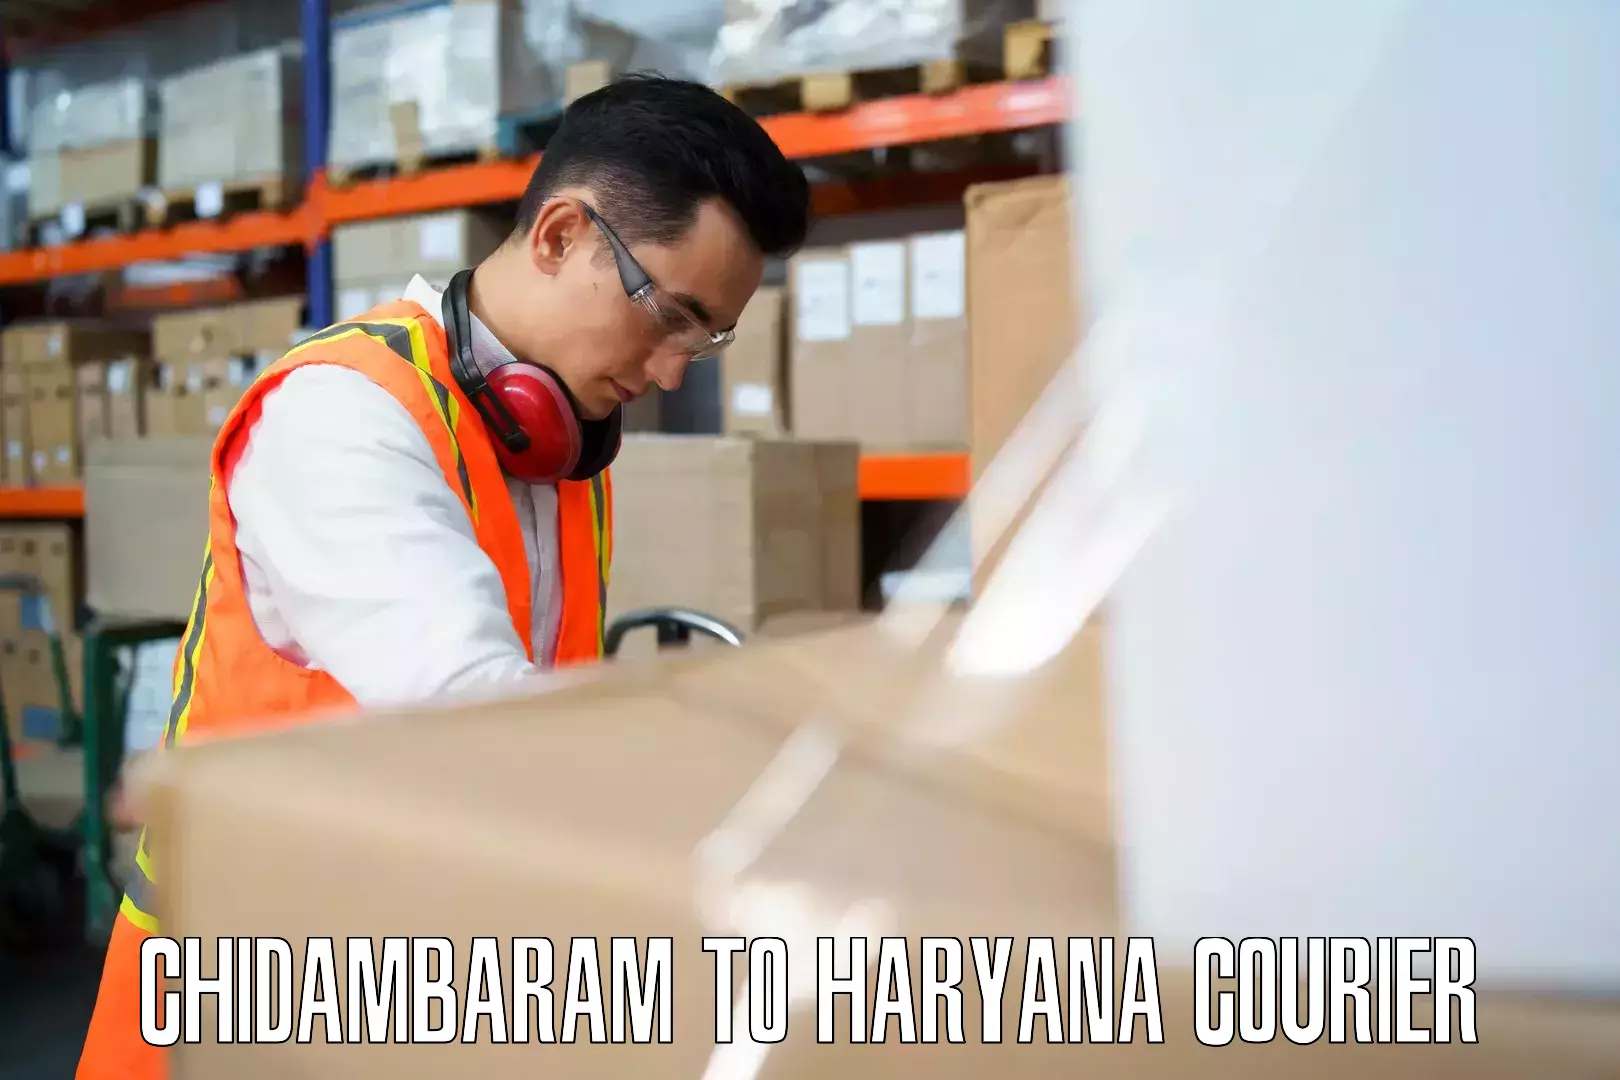 Luggage delivery providers Chidambaram to Narwana